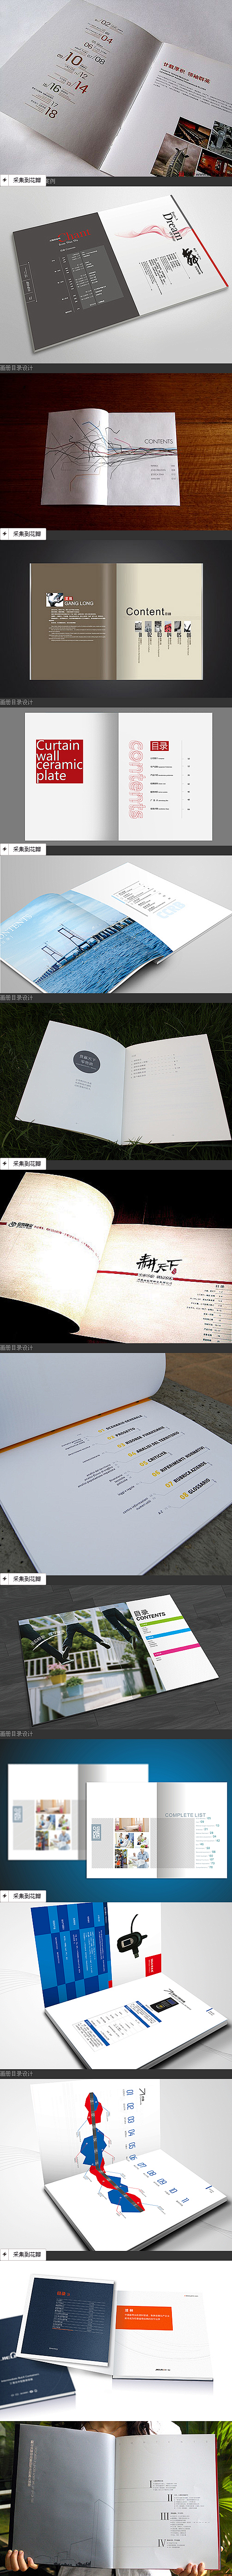 中国画册设计网 画册设计网 画册目录设计...